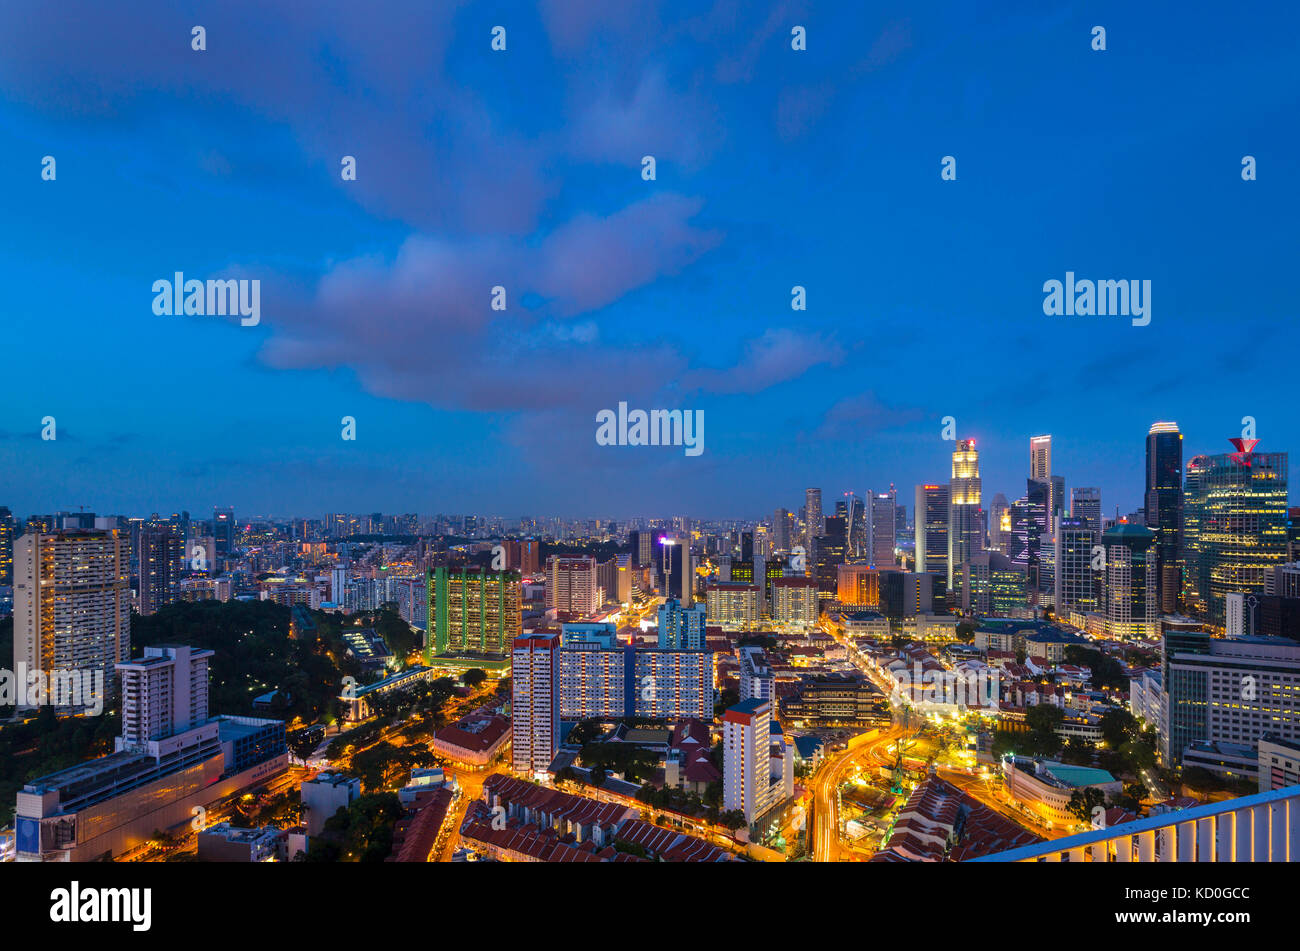 Paysage urbain du quartier financier et du quartier chinois de nuit, à Singapour, en Asie du sud-est Banque D'Images